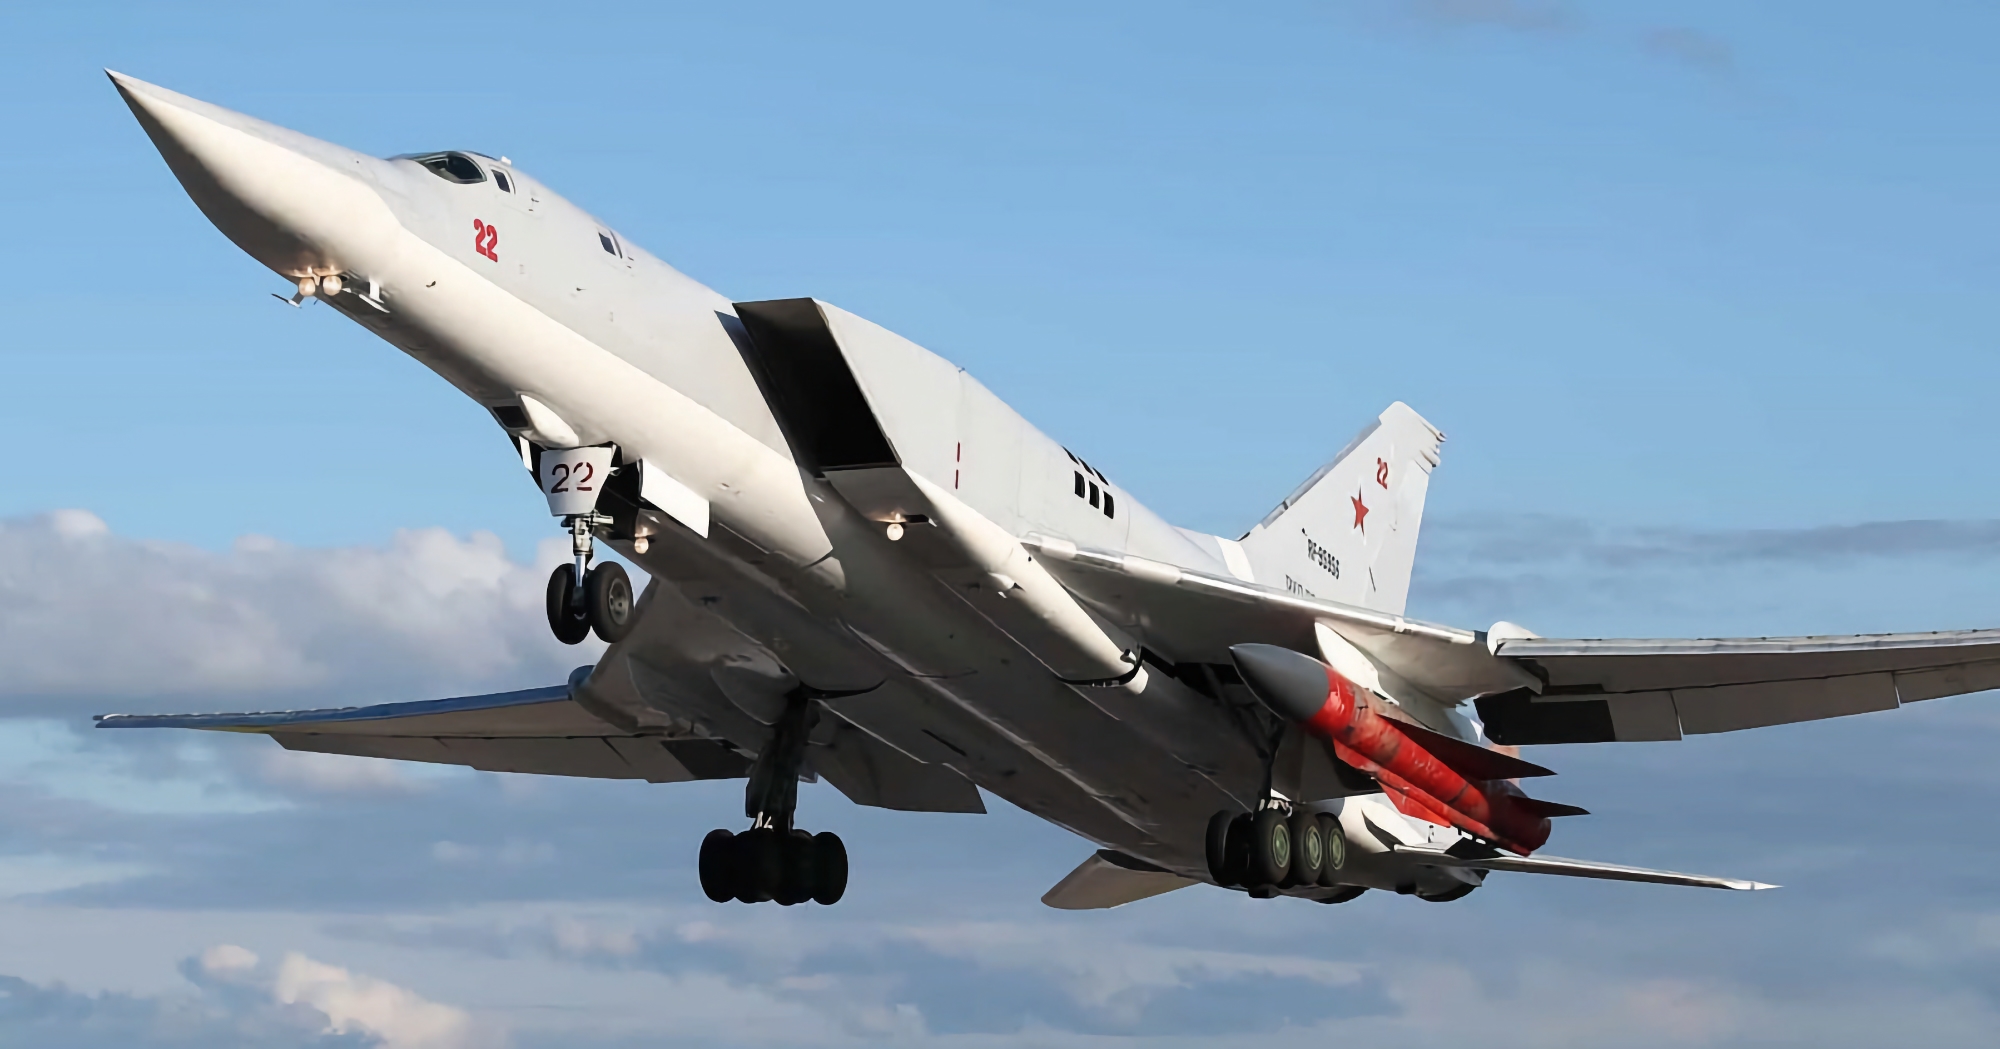 Il sistema di difesa aerea dell'Ucraina ha distrutto per la prima volta un bombardiere strategico russo Tu-22M3 che trasportava missili da crociera Kh-22.